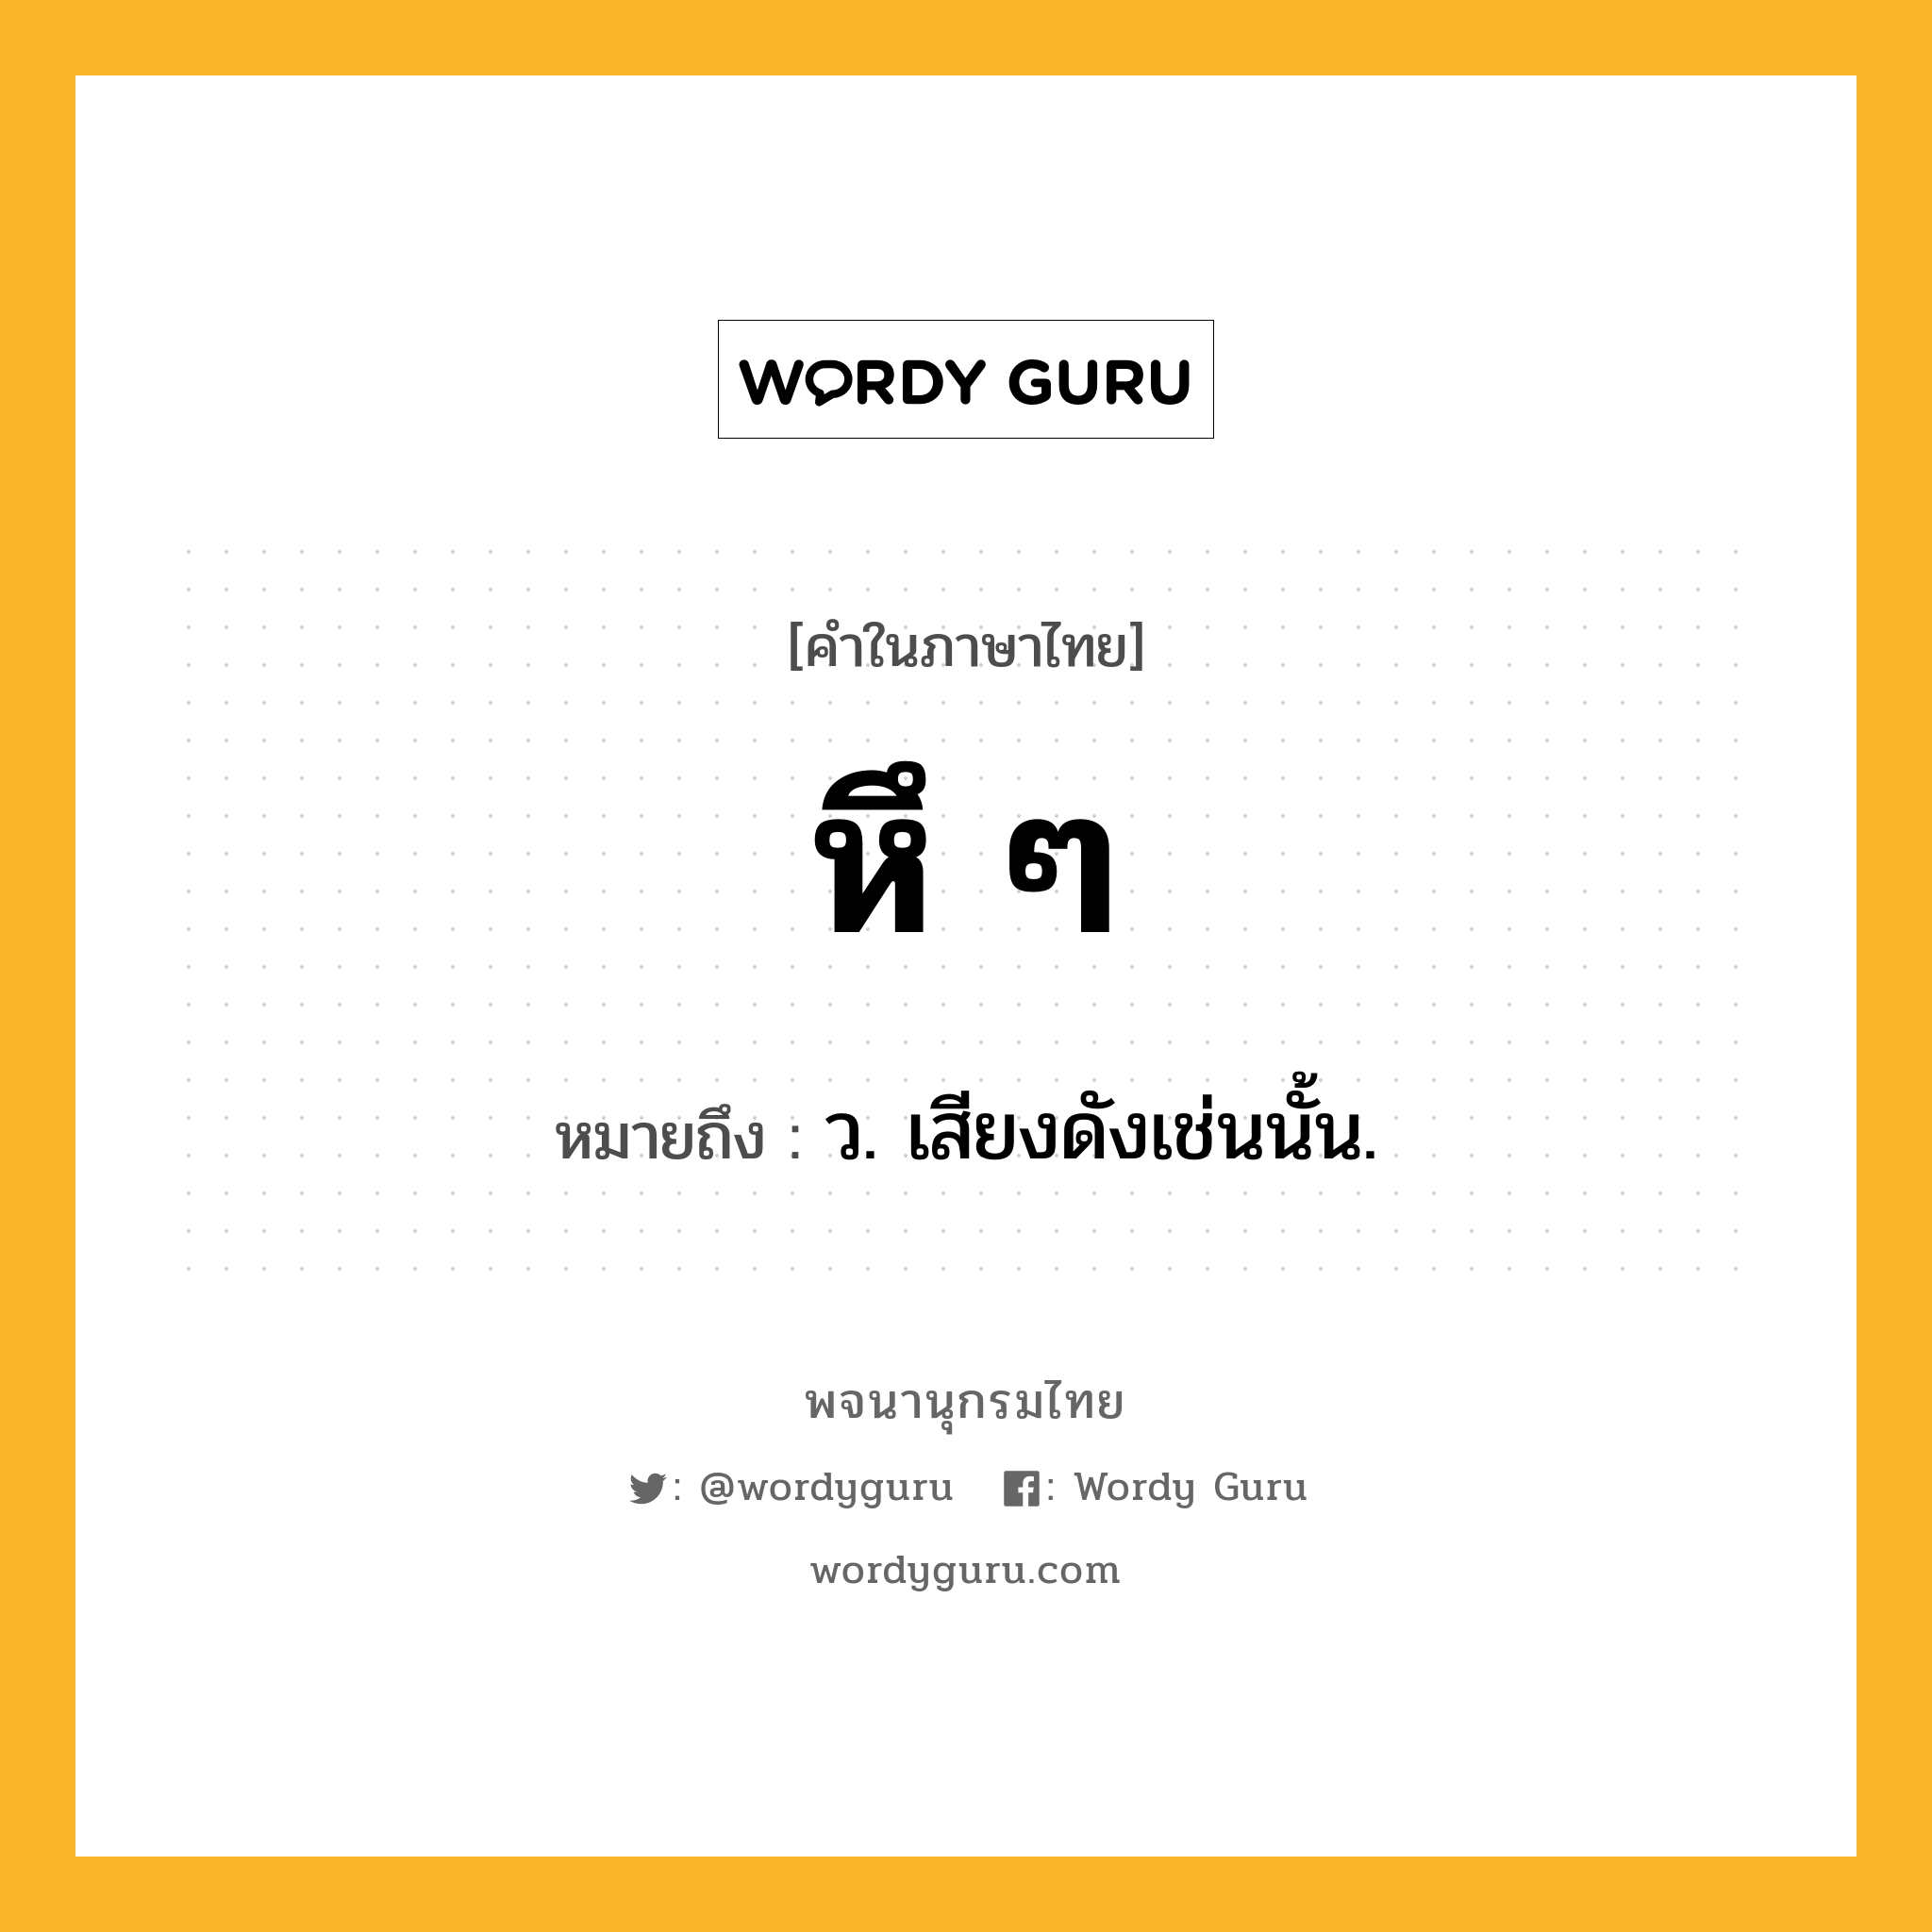 หึ ๆ ความหมาย หมายถึงอะไร?, คำในภาษาไทย หึ ๆ หมายถึง ว. เสียงดังเช่นนั้น.